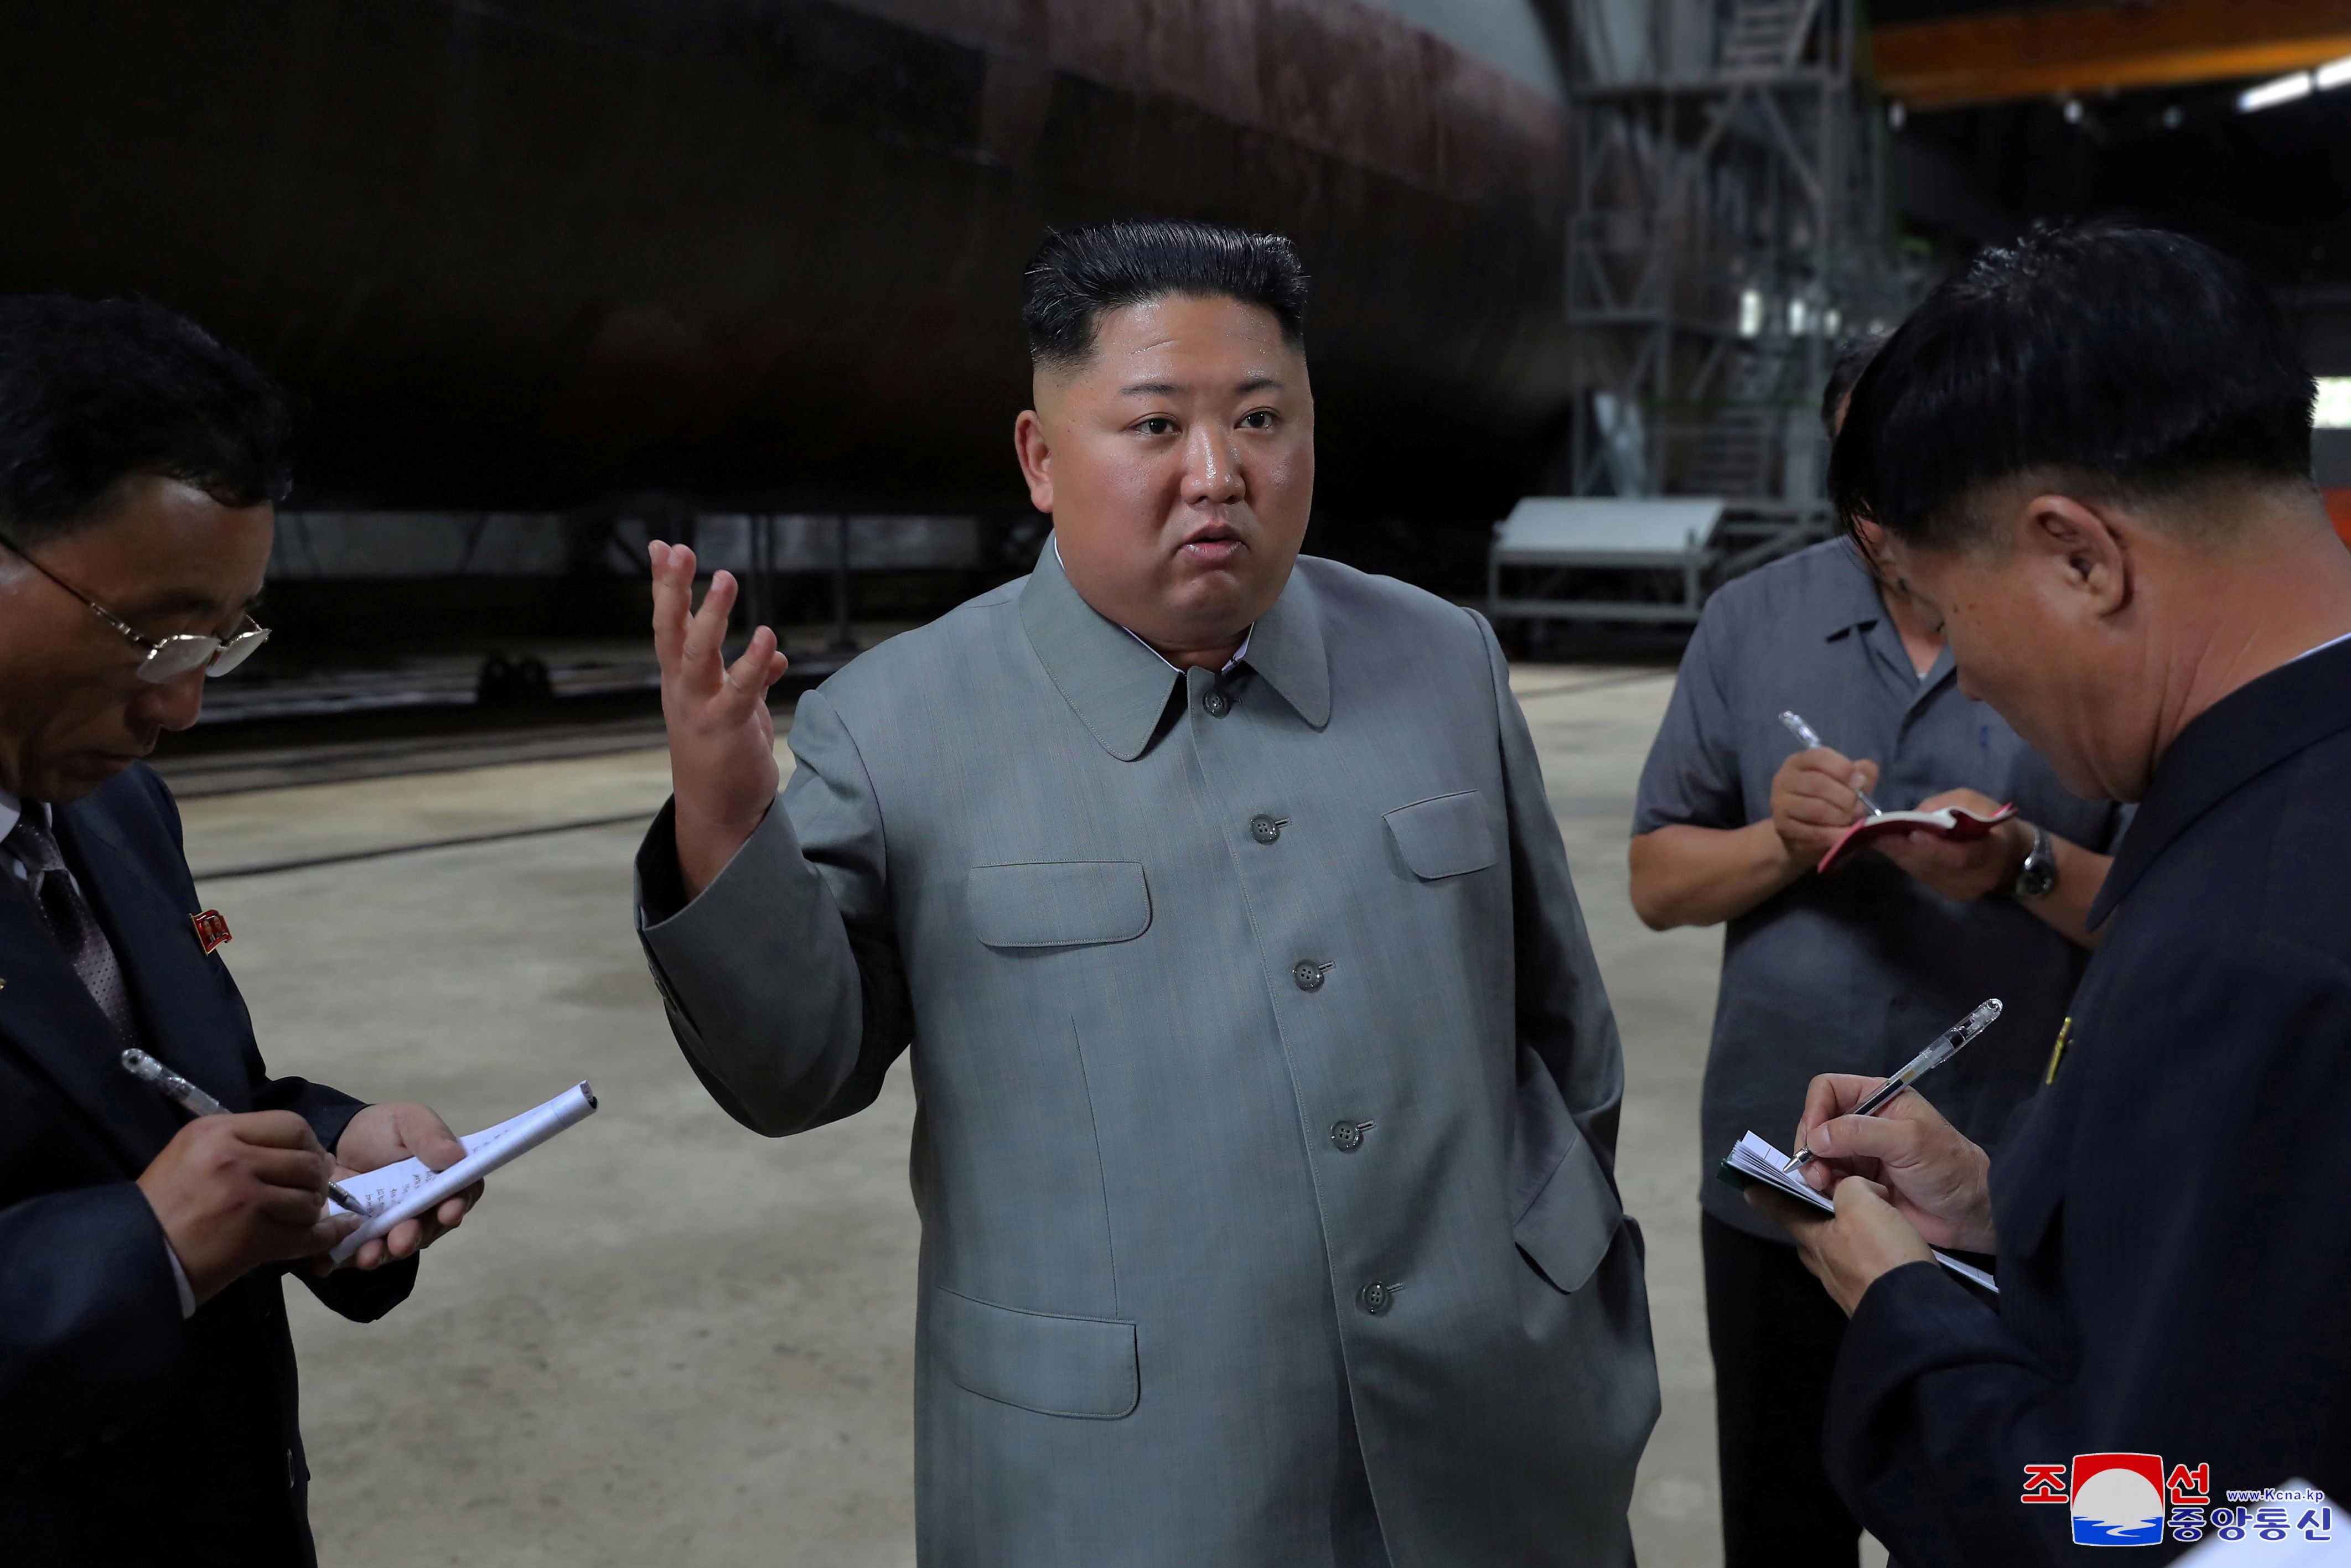 El dictador de Corea del Norte Kim Jong-un durante una visita a una fabrica de submarinos on, North Korea (KCNA via REUTERS)